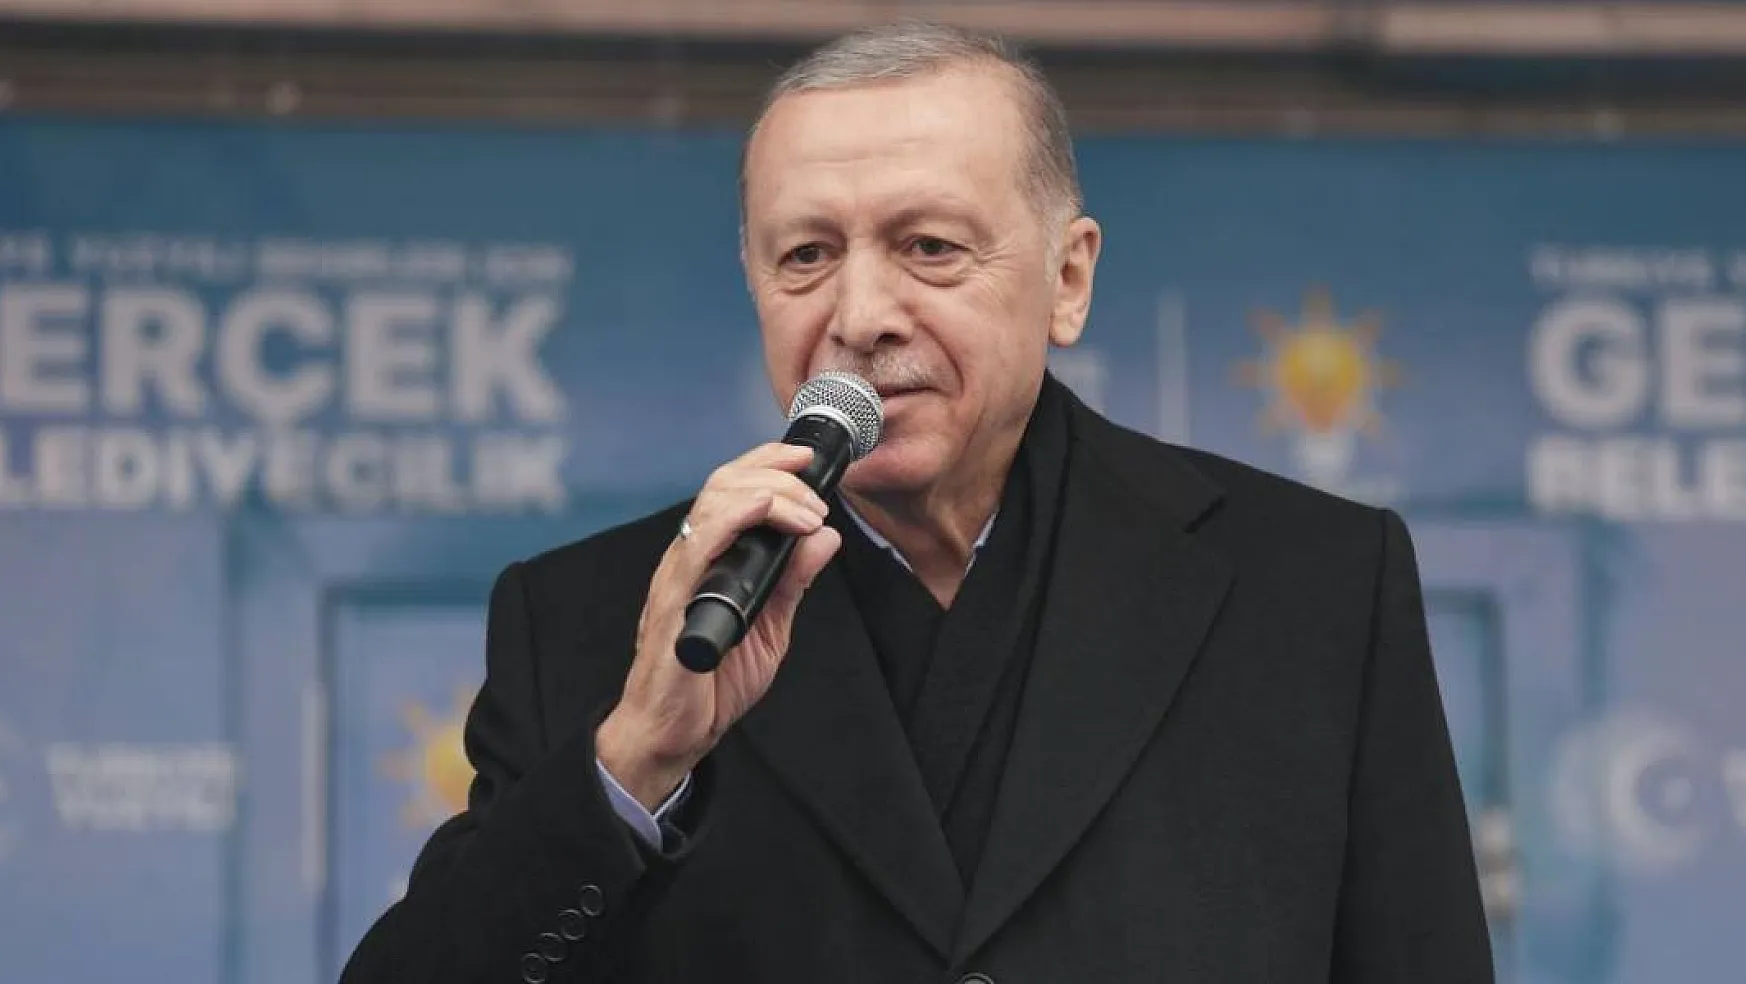 Cumhurbaşkanı Erdoğan'dan Emekliye Zam Müjdesi